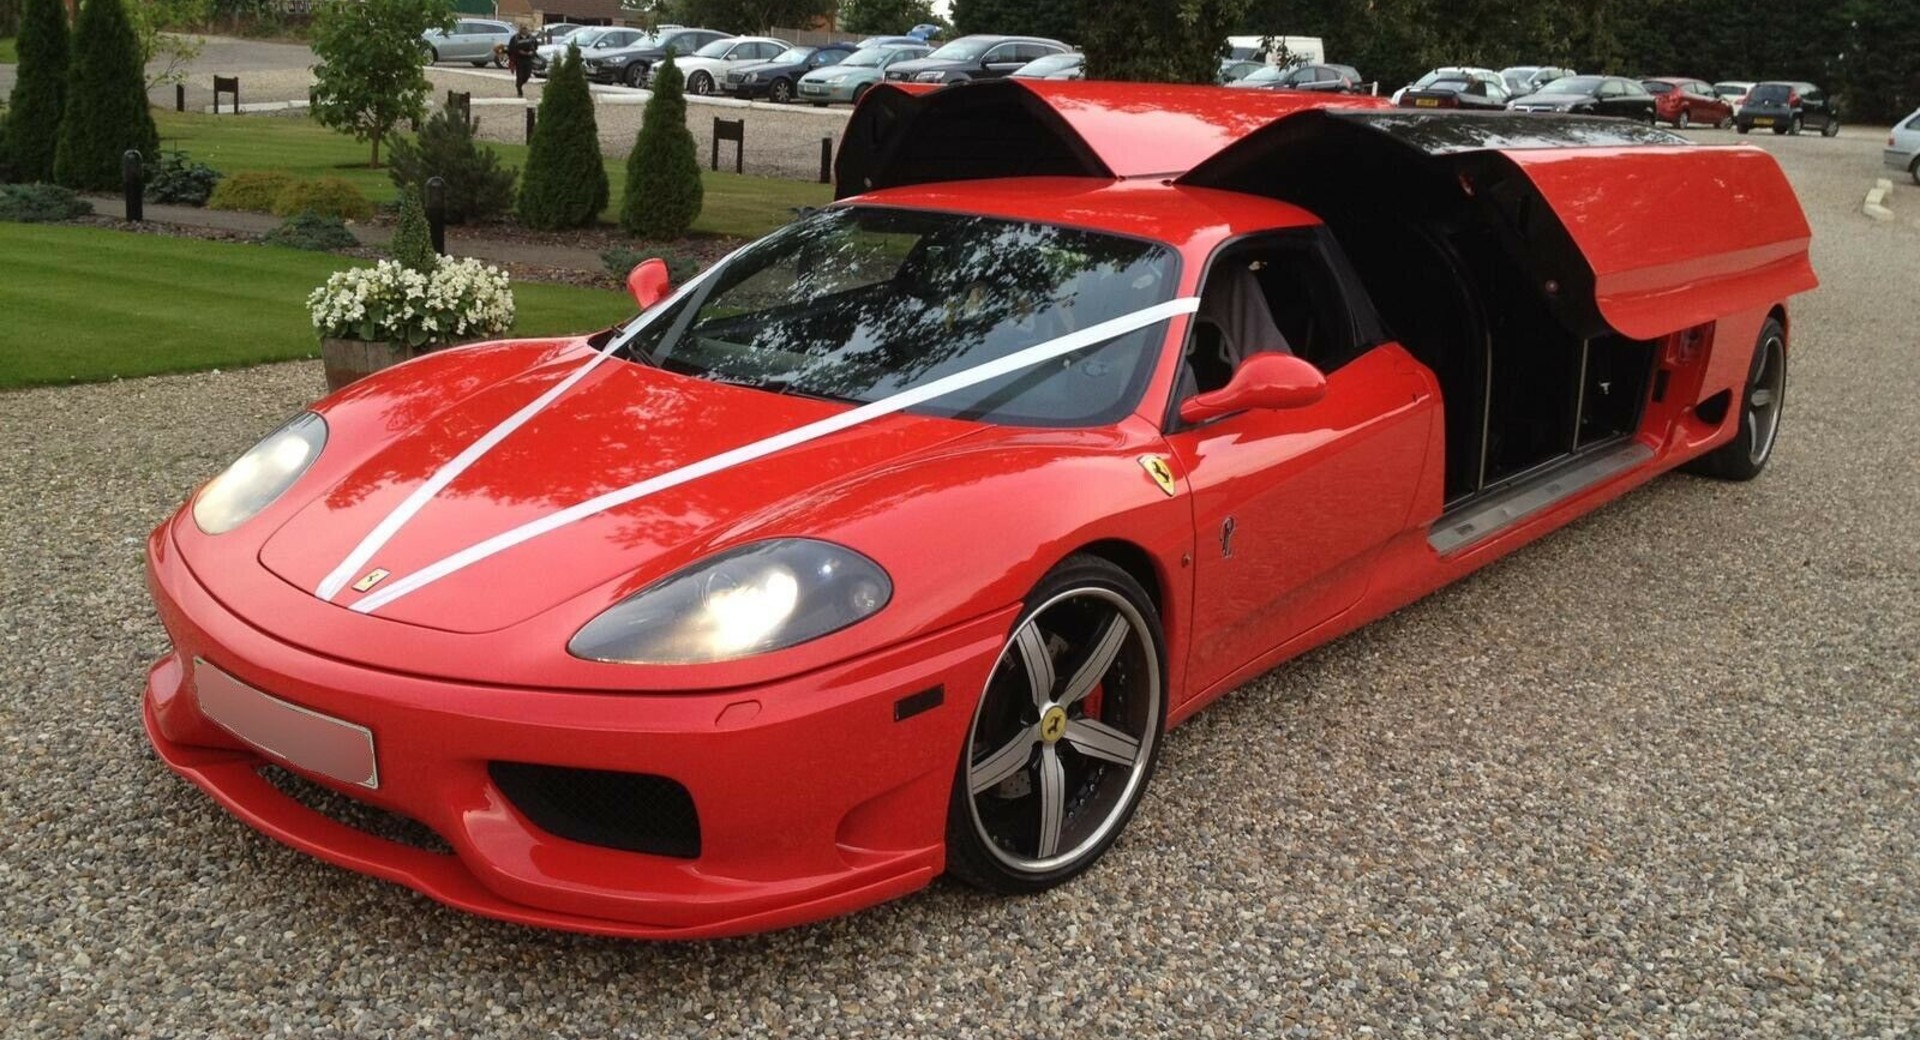 Ferrari Limo Inside